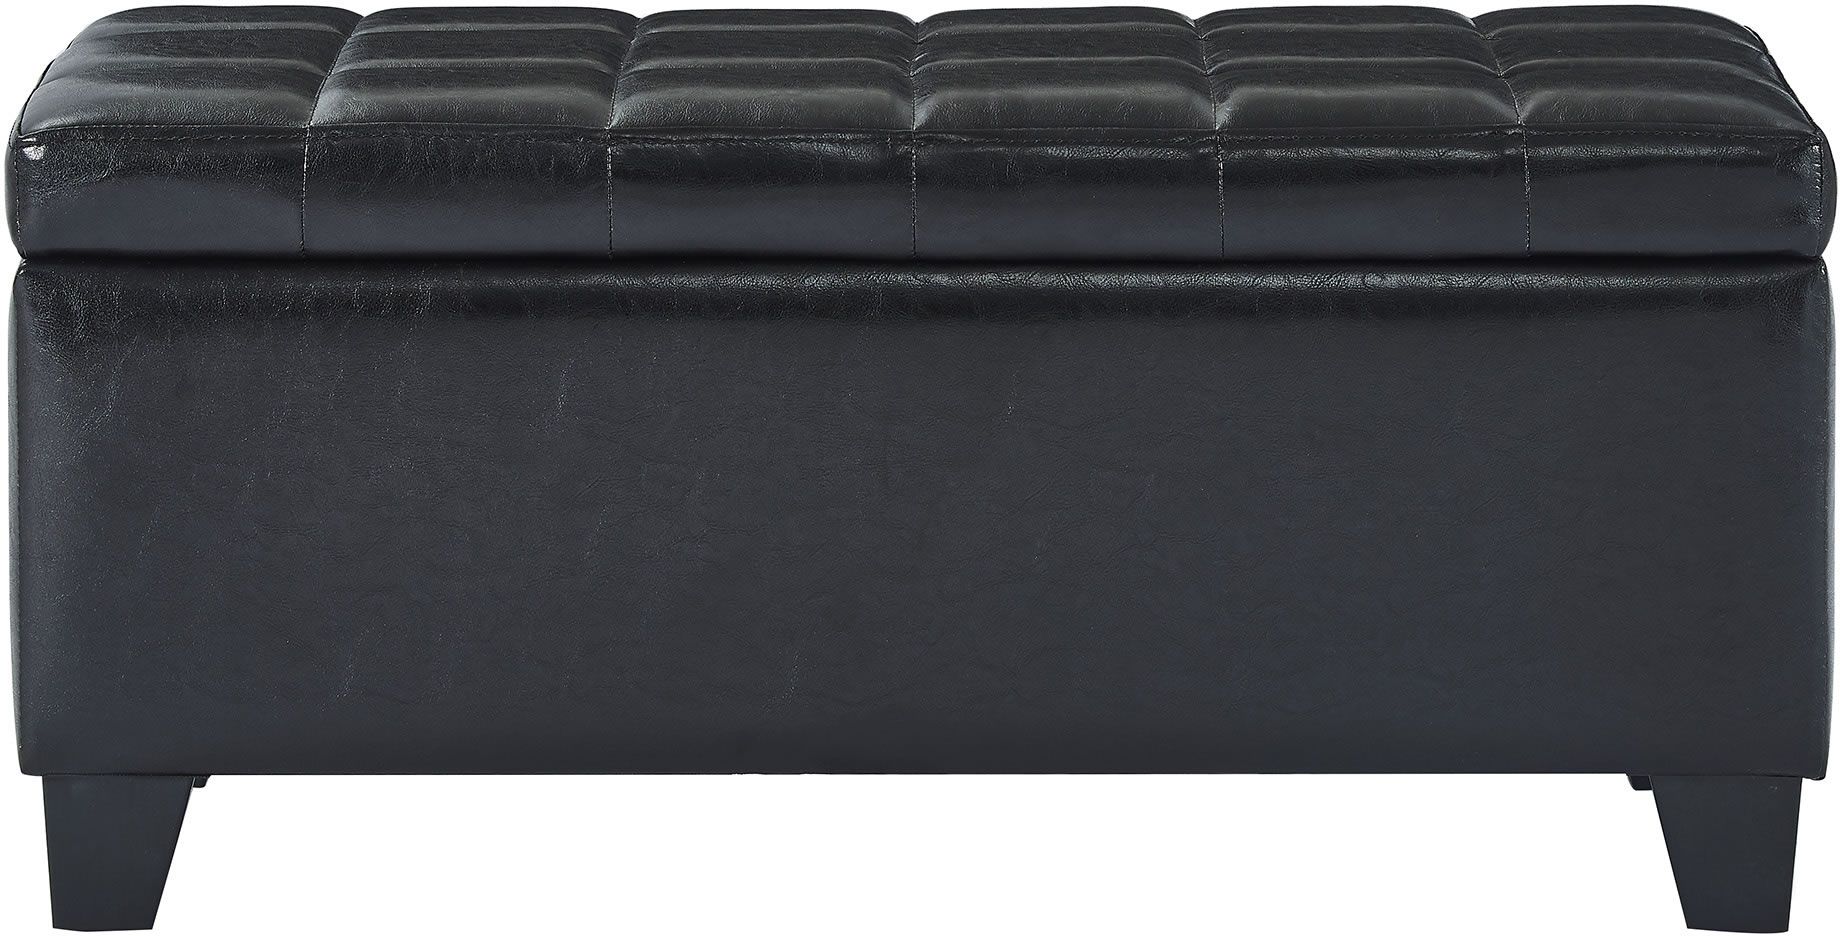 Whi Winston Rectangular Storage Ottoman, Leather Ottoman Black